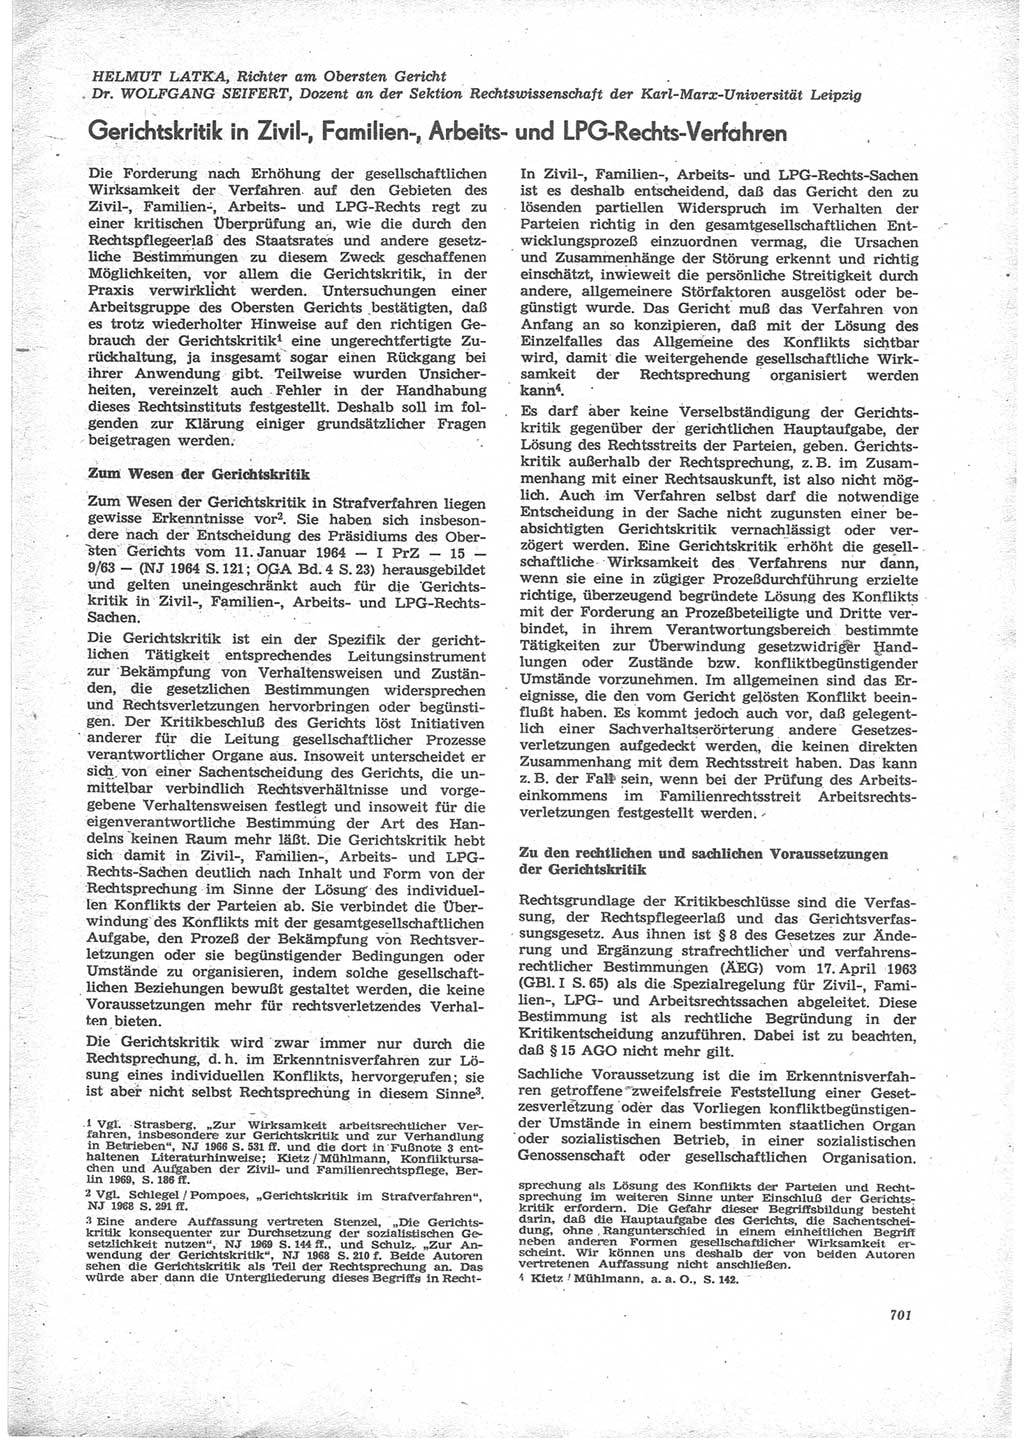 Neue Justiz (NJ), Zeitschrift für Recht und Rechtswissenschaft [Deutsche Demokratische Republik (DDR)], 24. Jahrgang 1970, Seite 701 (NJ DDR 1970, S. 701)